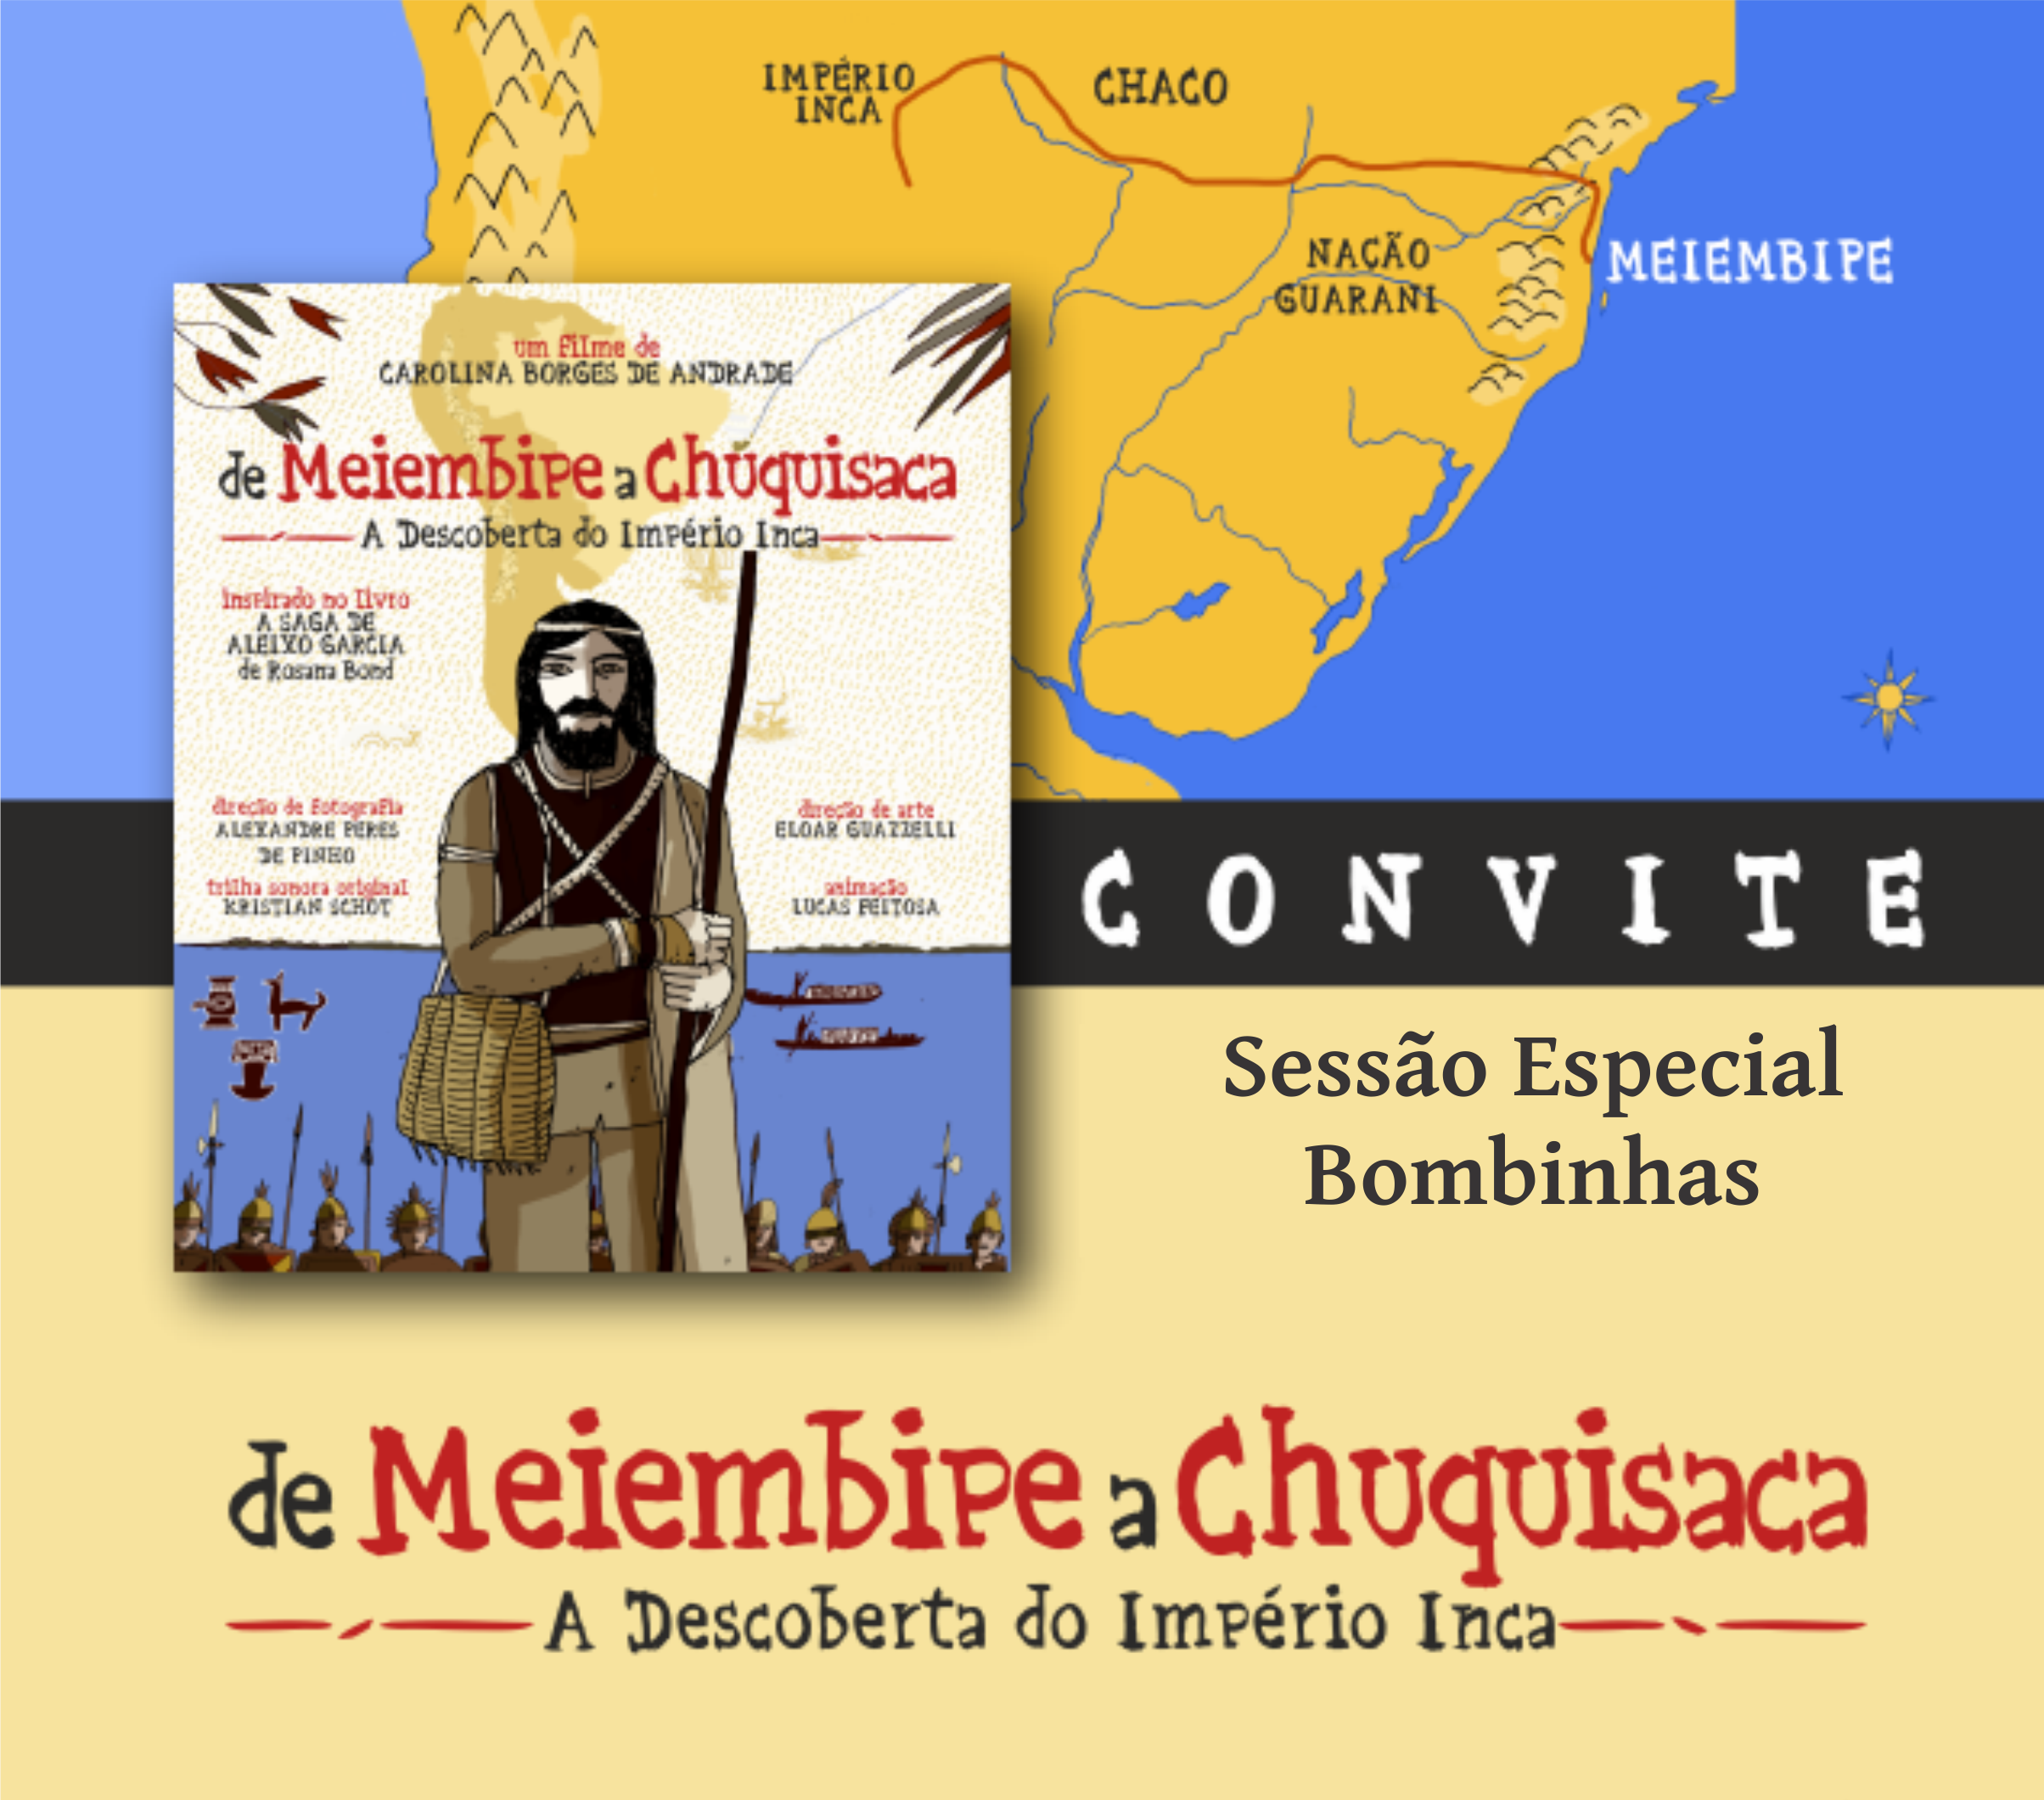 O filme “de Meiembipe a Chuquisaca: a Descoberta do Império Inca” vencedor do Prêmio Catarinense de Cinema será exibido gratuitamente na Casa de Cultura Dona Tila.